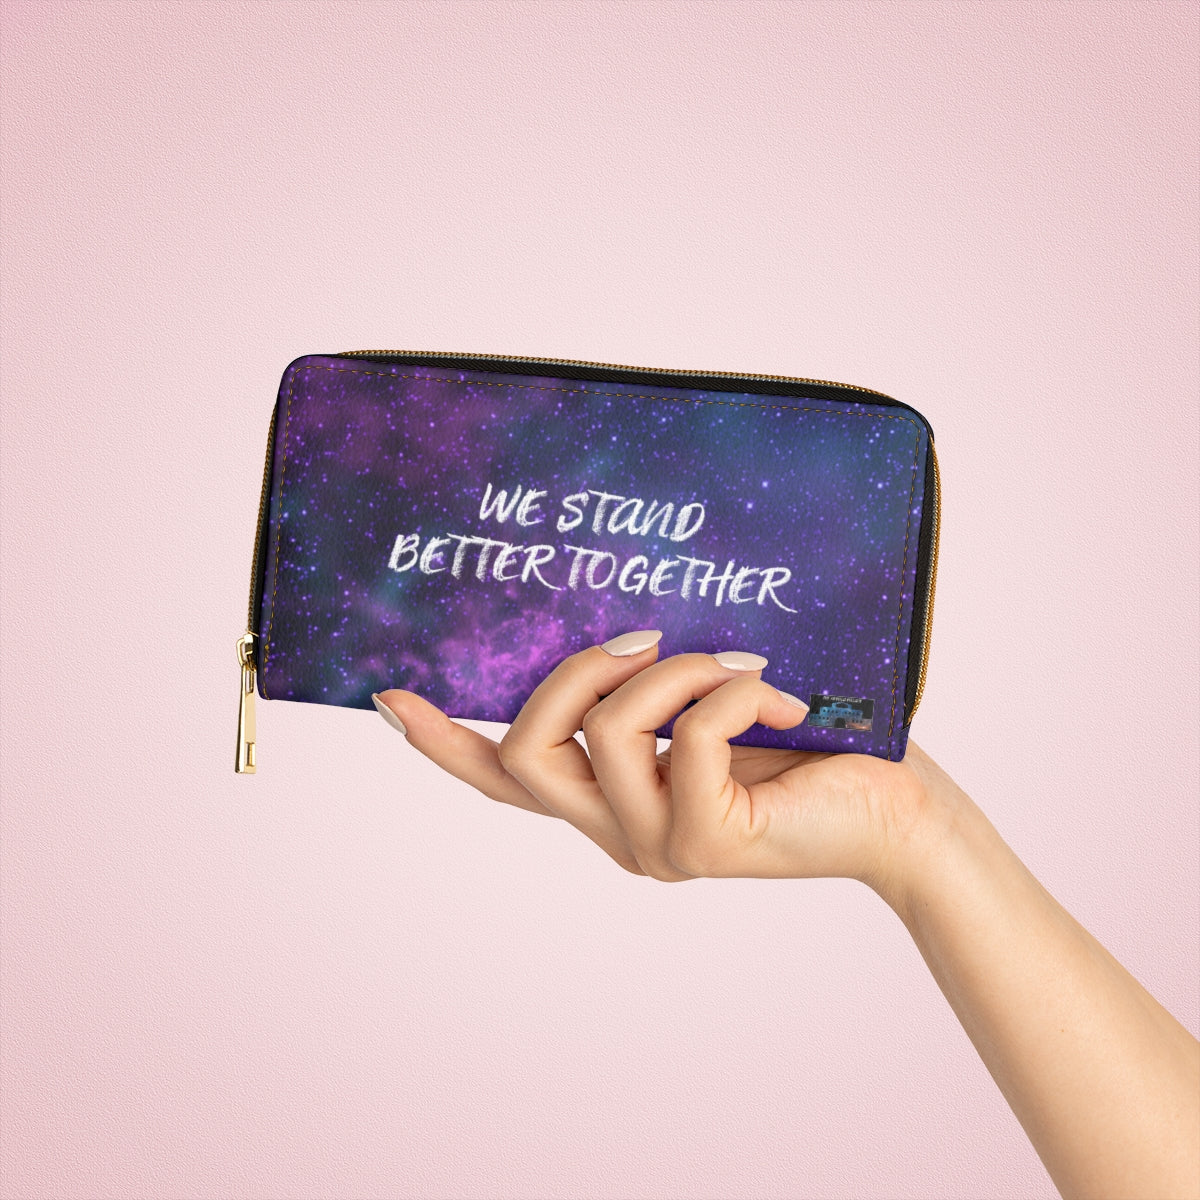 WE STAND BETTER TOGETHER Pastel Nebula Wallet The Nebula Palace: Spiritually Cosmic Fashion